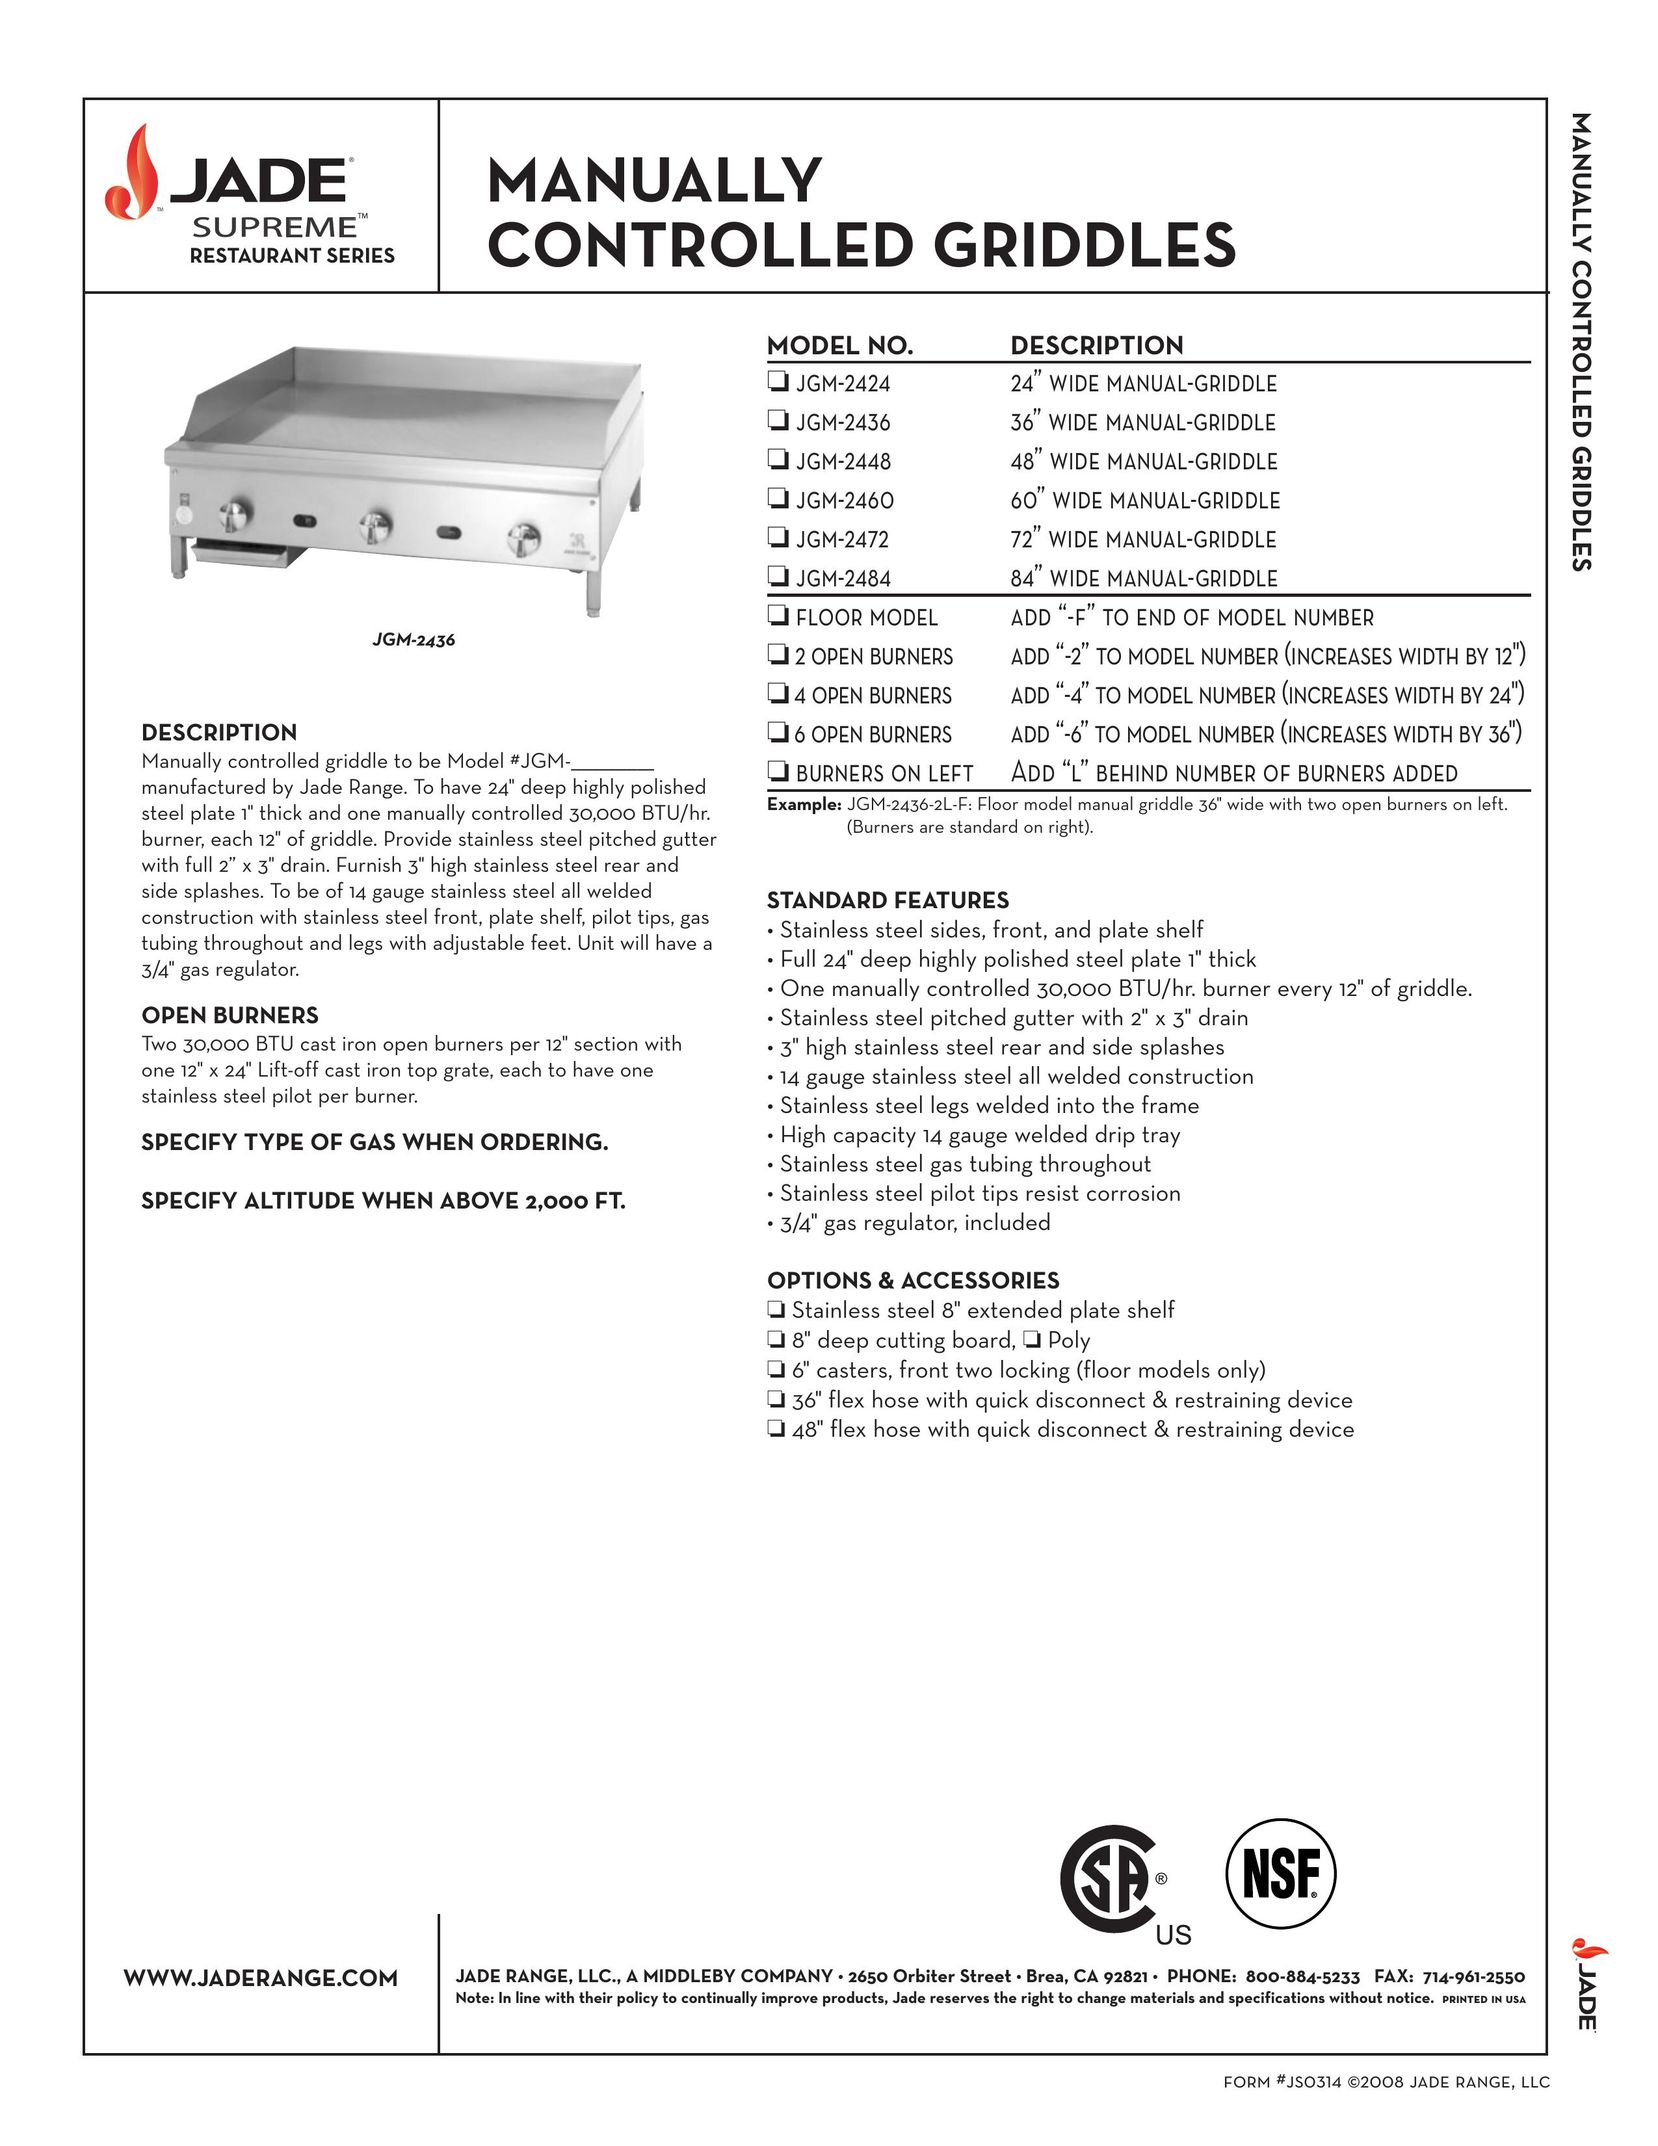 Jade Range JGM-2448 Griddle User Manual